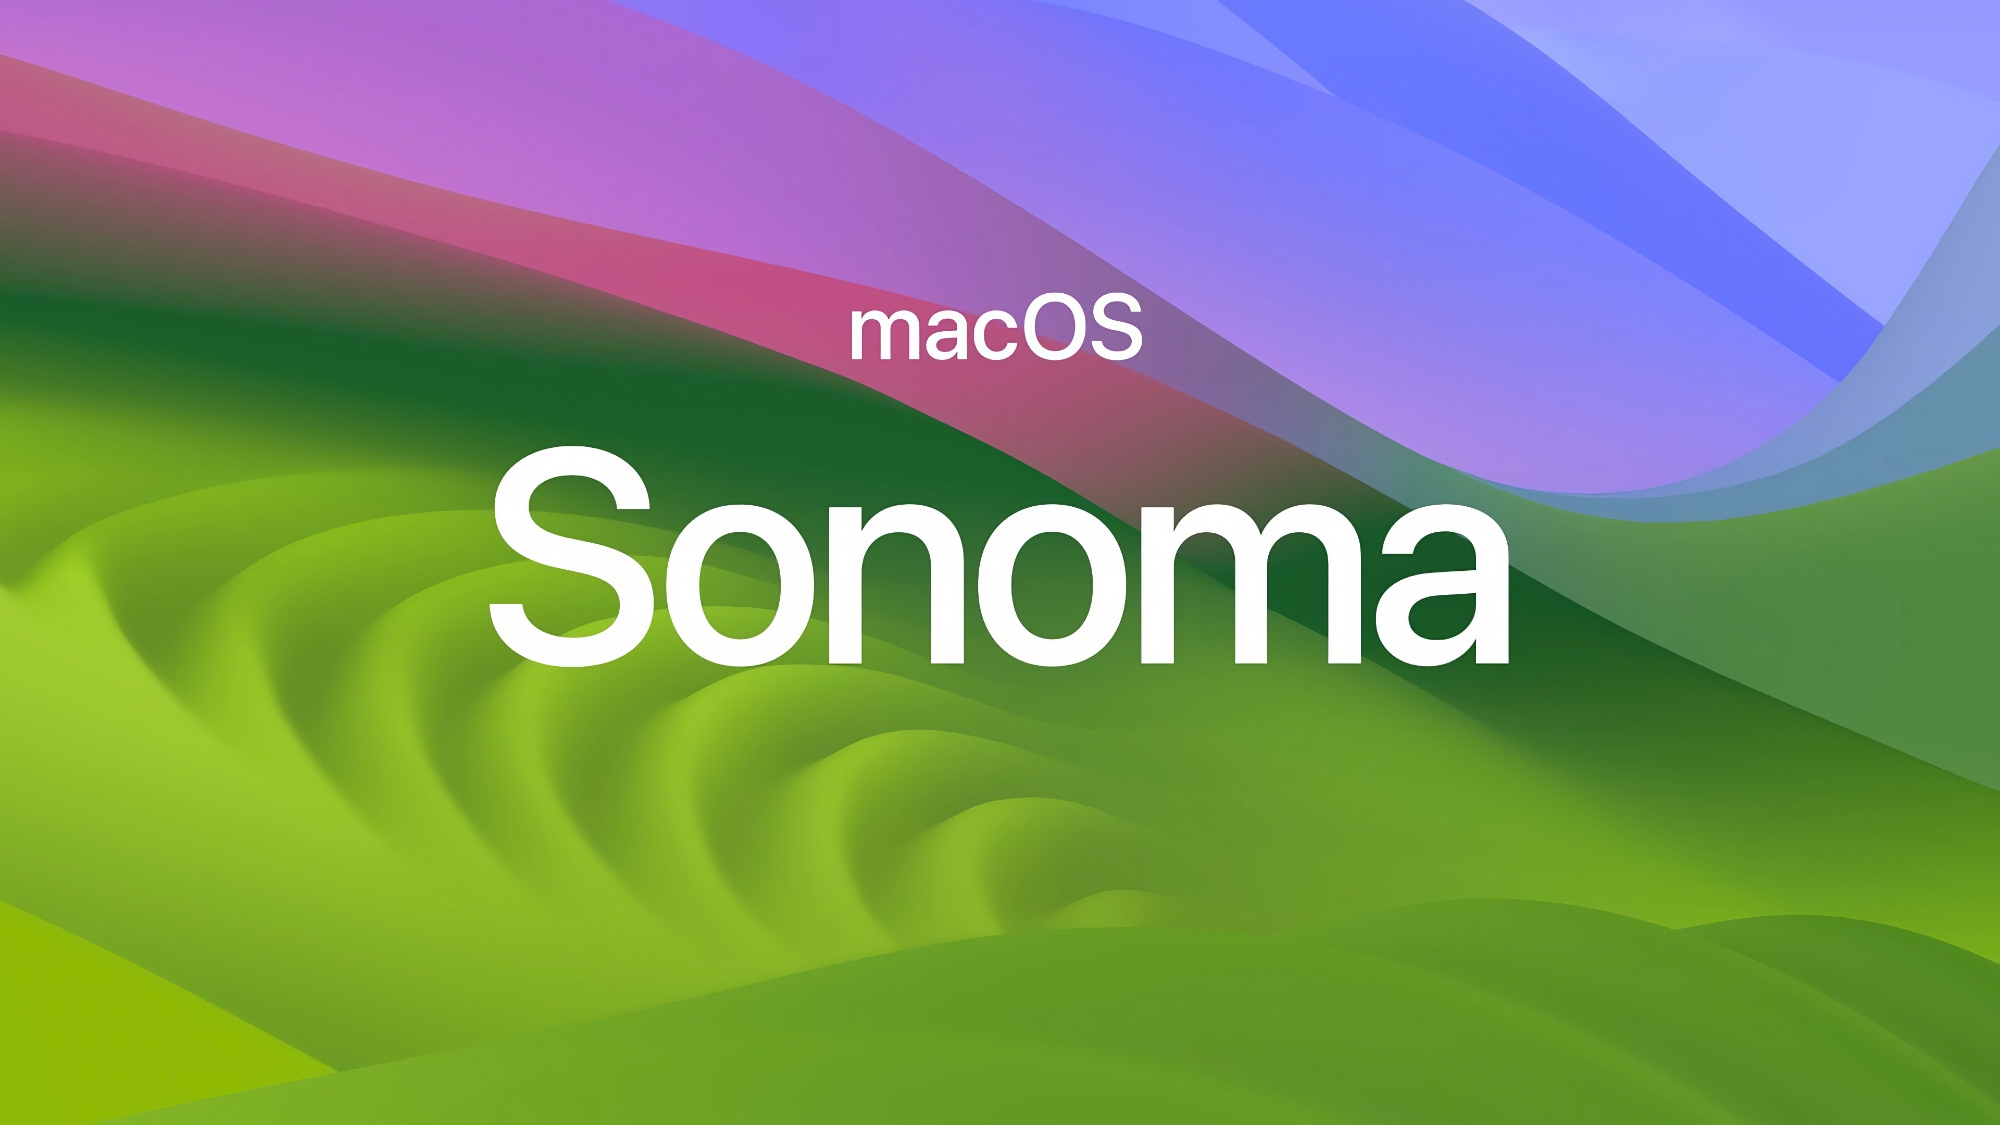 Correzioni di bug: Apple ha rilasciato macOS Sonoma 14.3.1